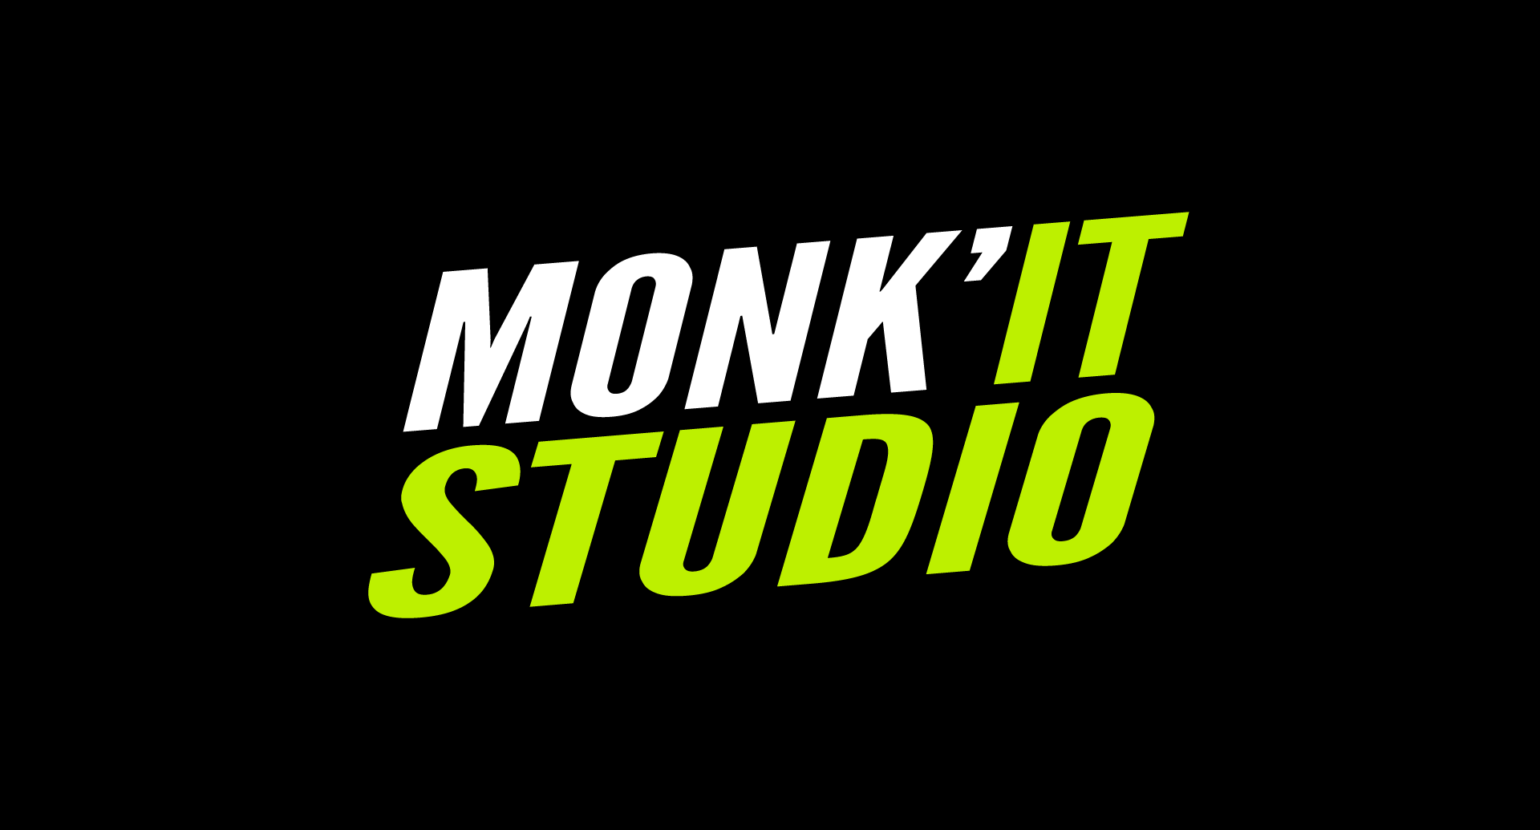 Monk’IT Studio